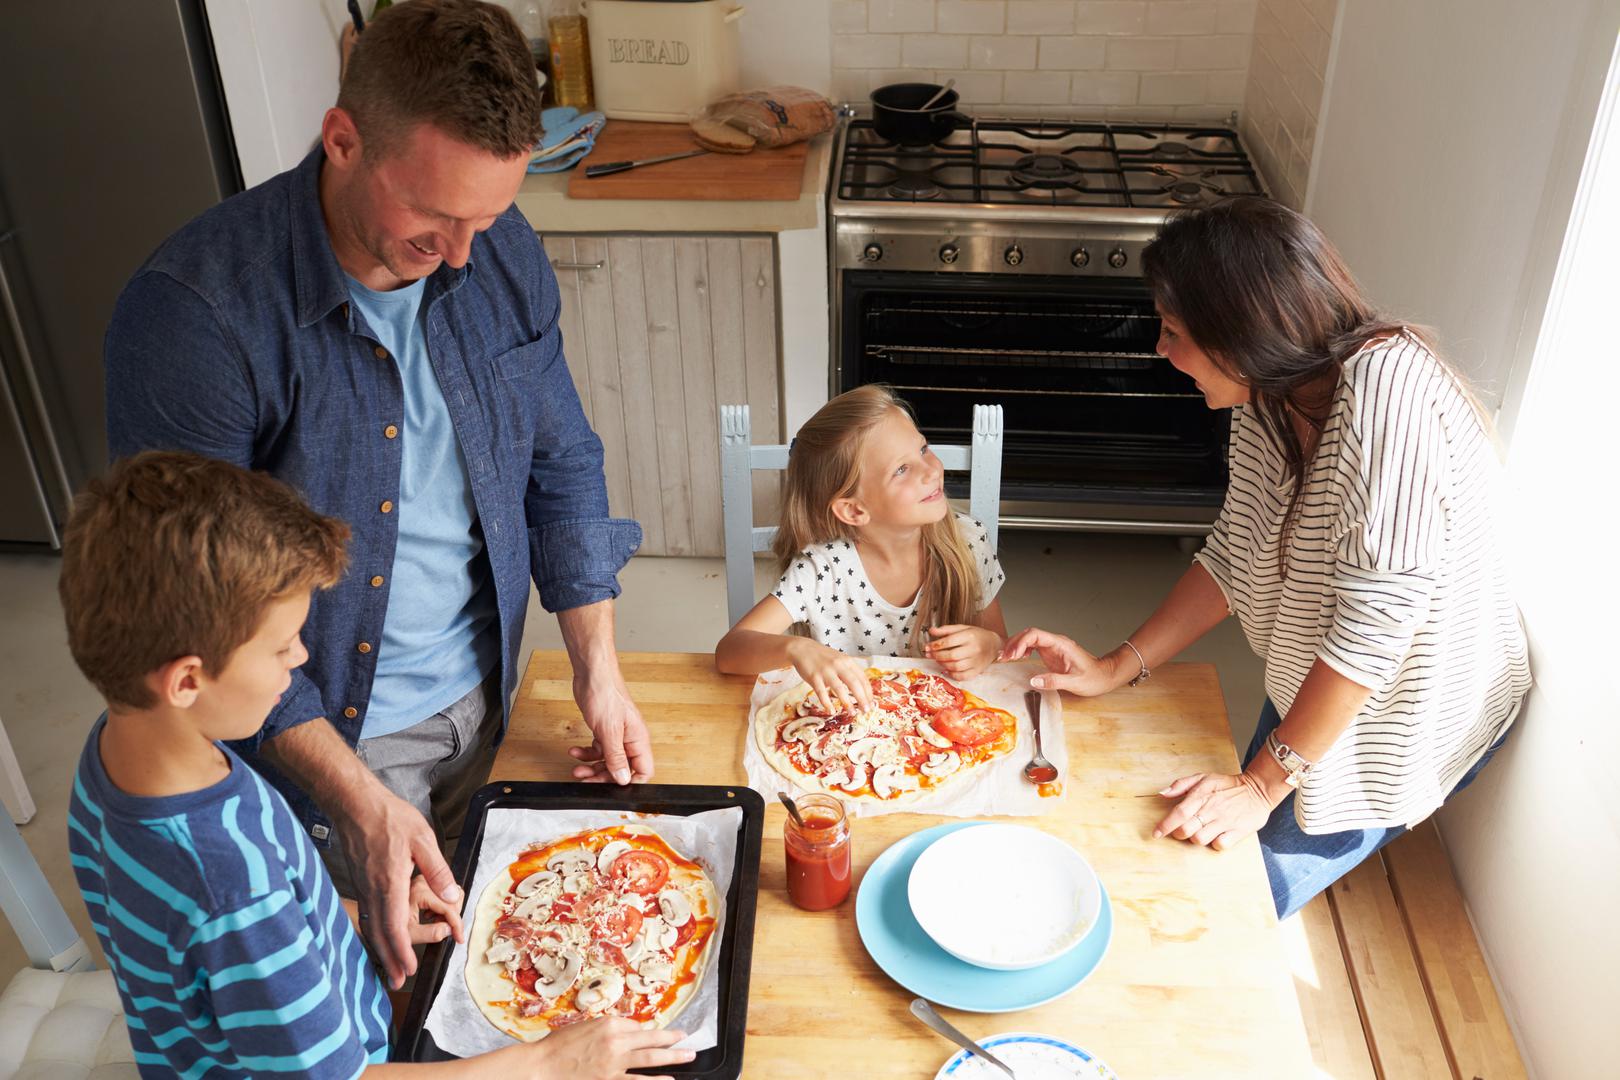 Ako nemate krušnu peć, odnosno, pizzu pečete u svojoj kuhinji s plinskom ili električnom pećnicom, tada biste je trebali zagrijati na 230 stupnjeva i tada staviti pizzu unutra.